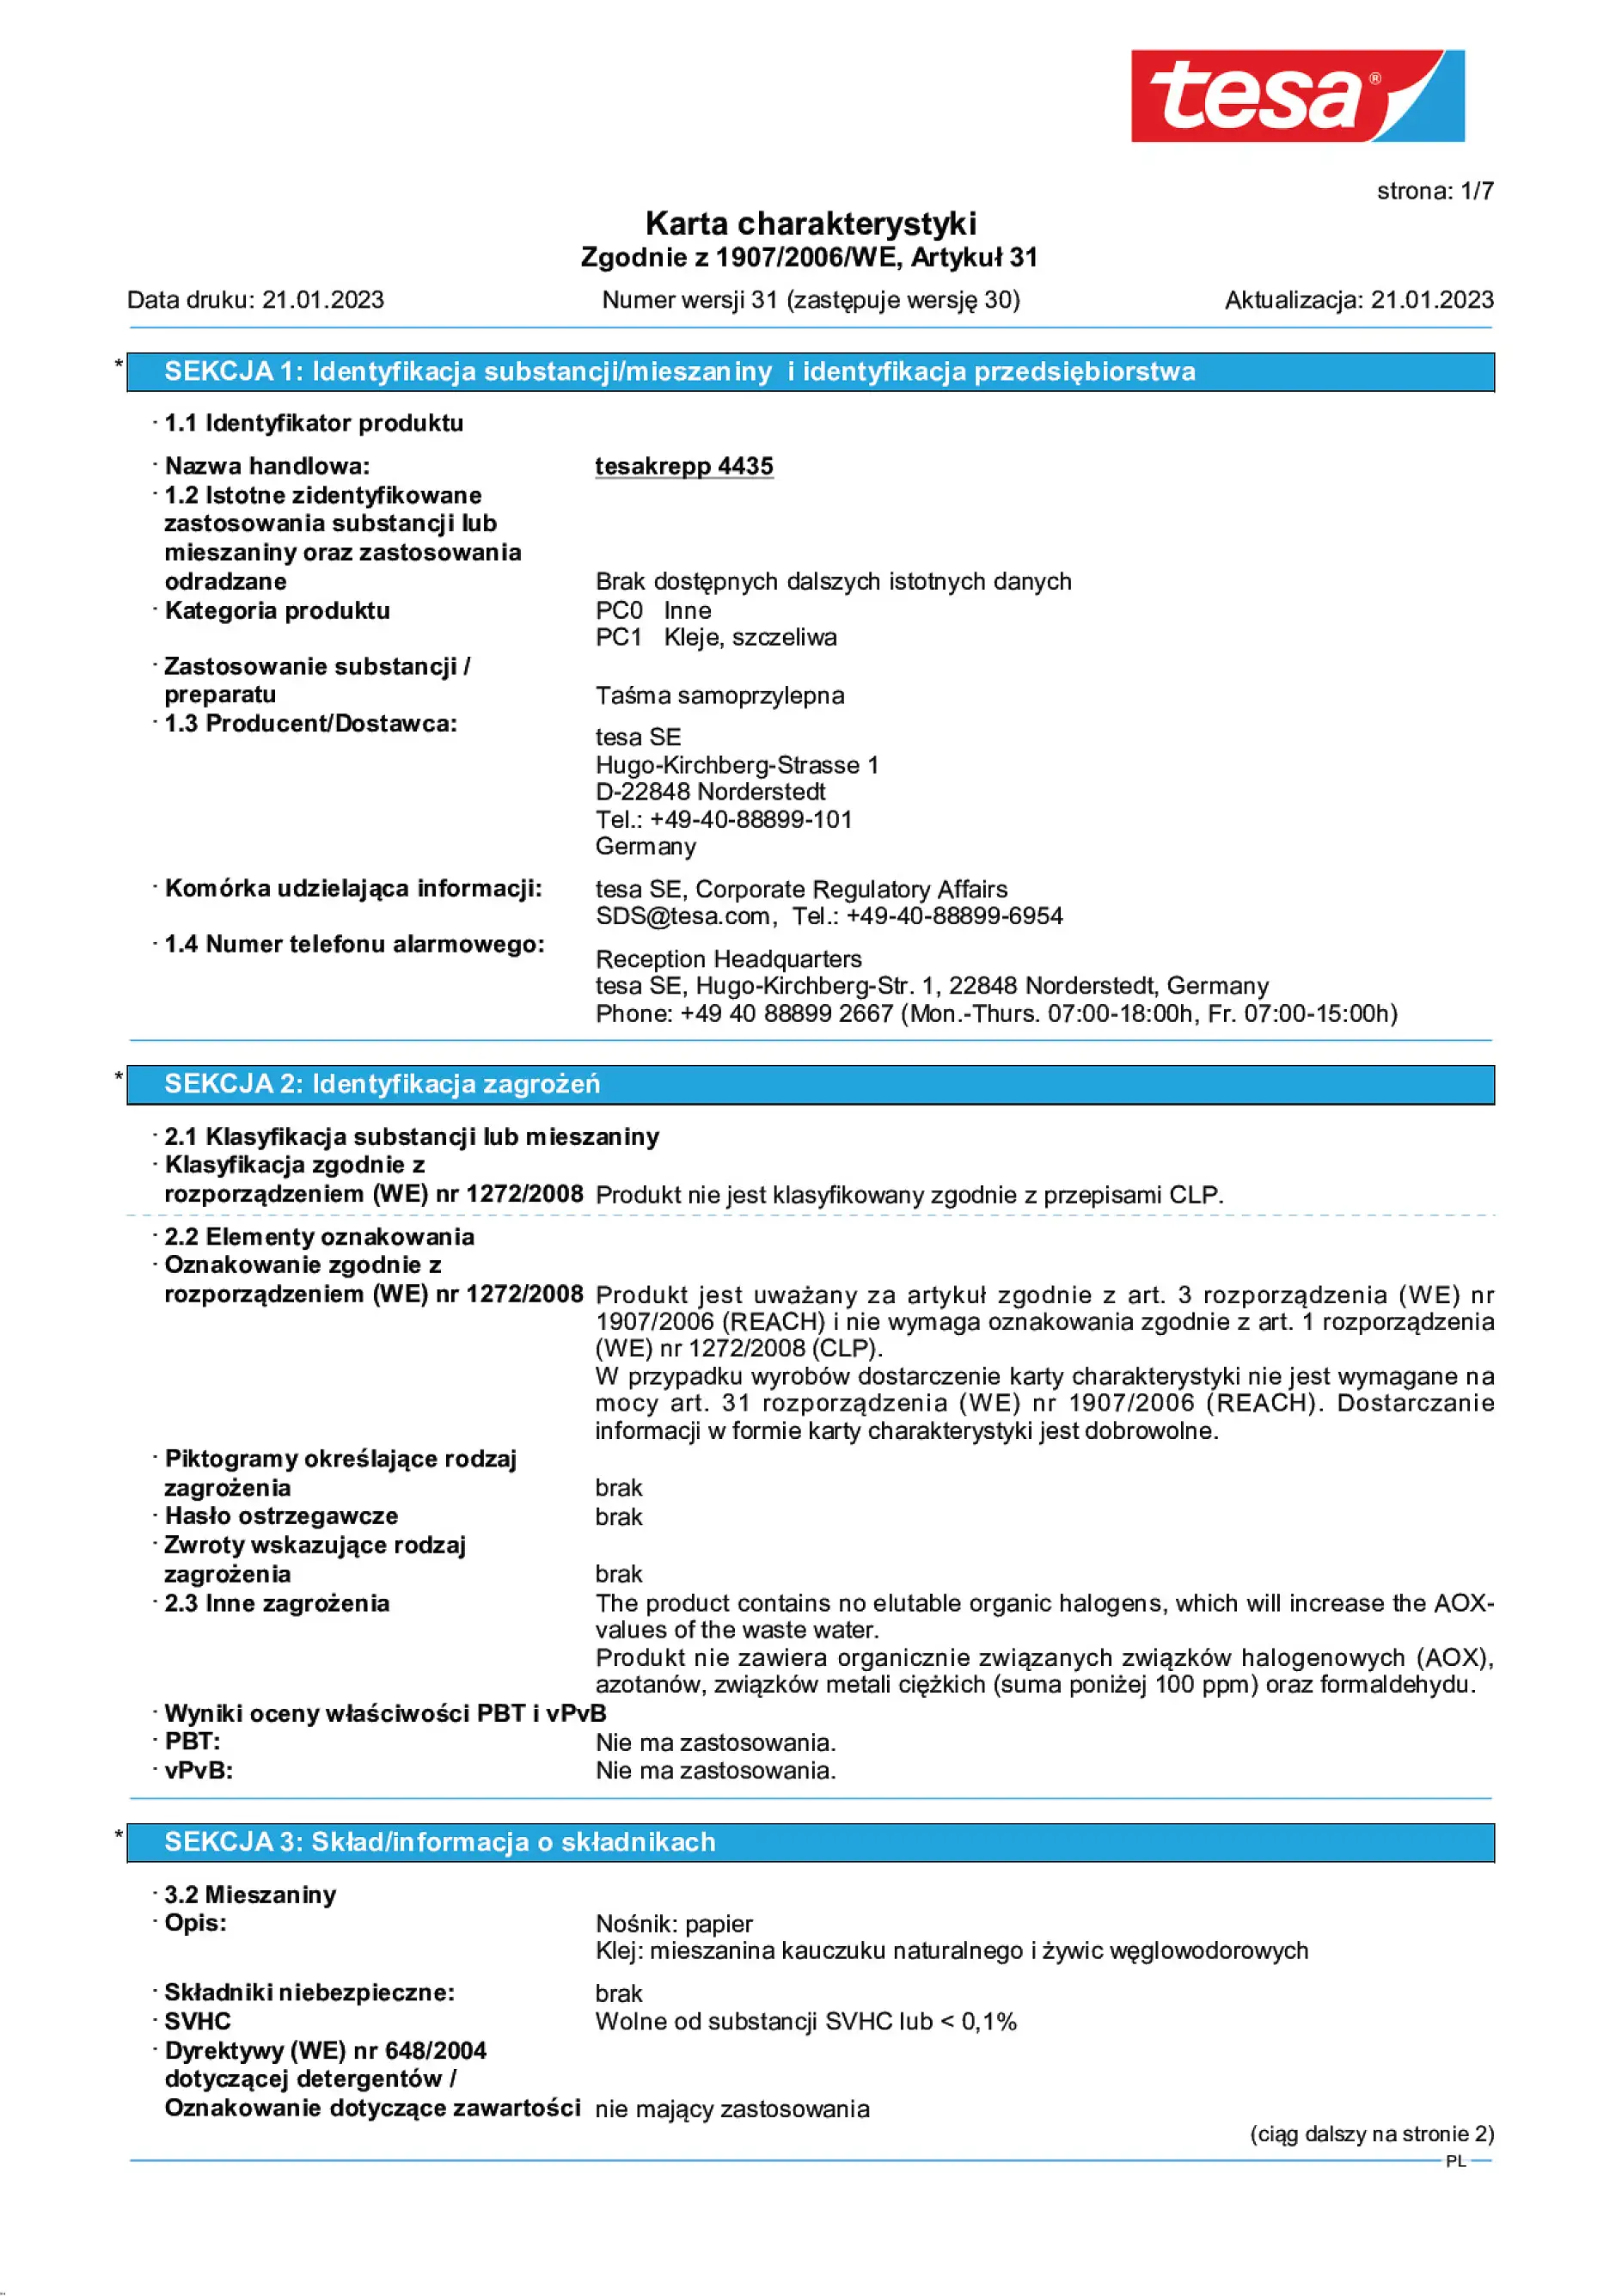 Safety data sheet_tesa® Professional 04435_pl-PL_v31